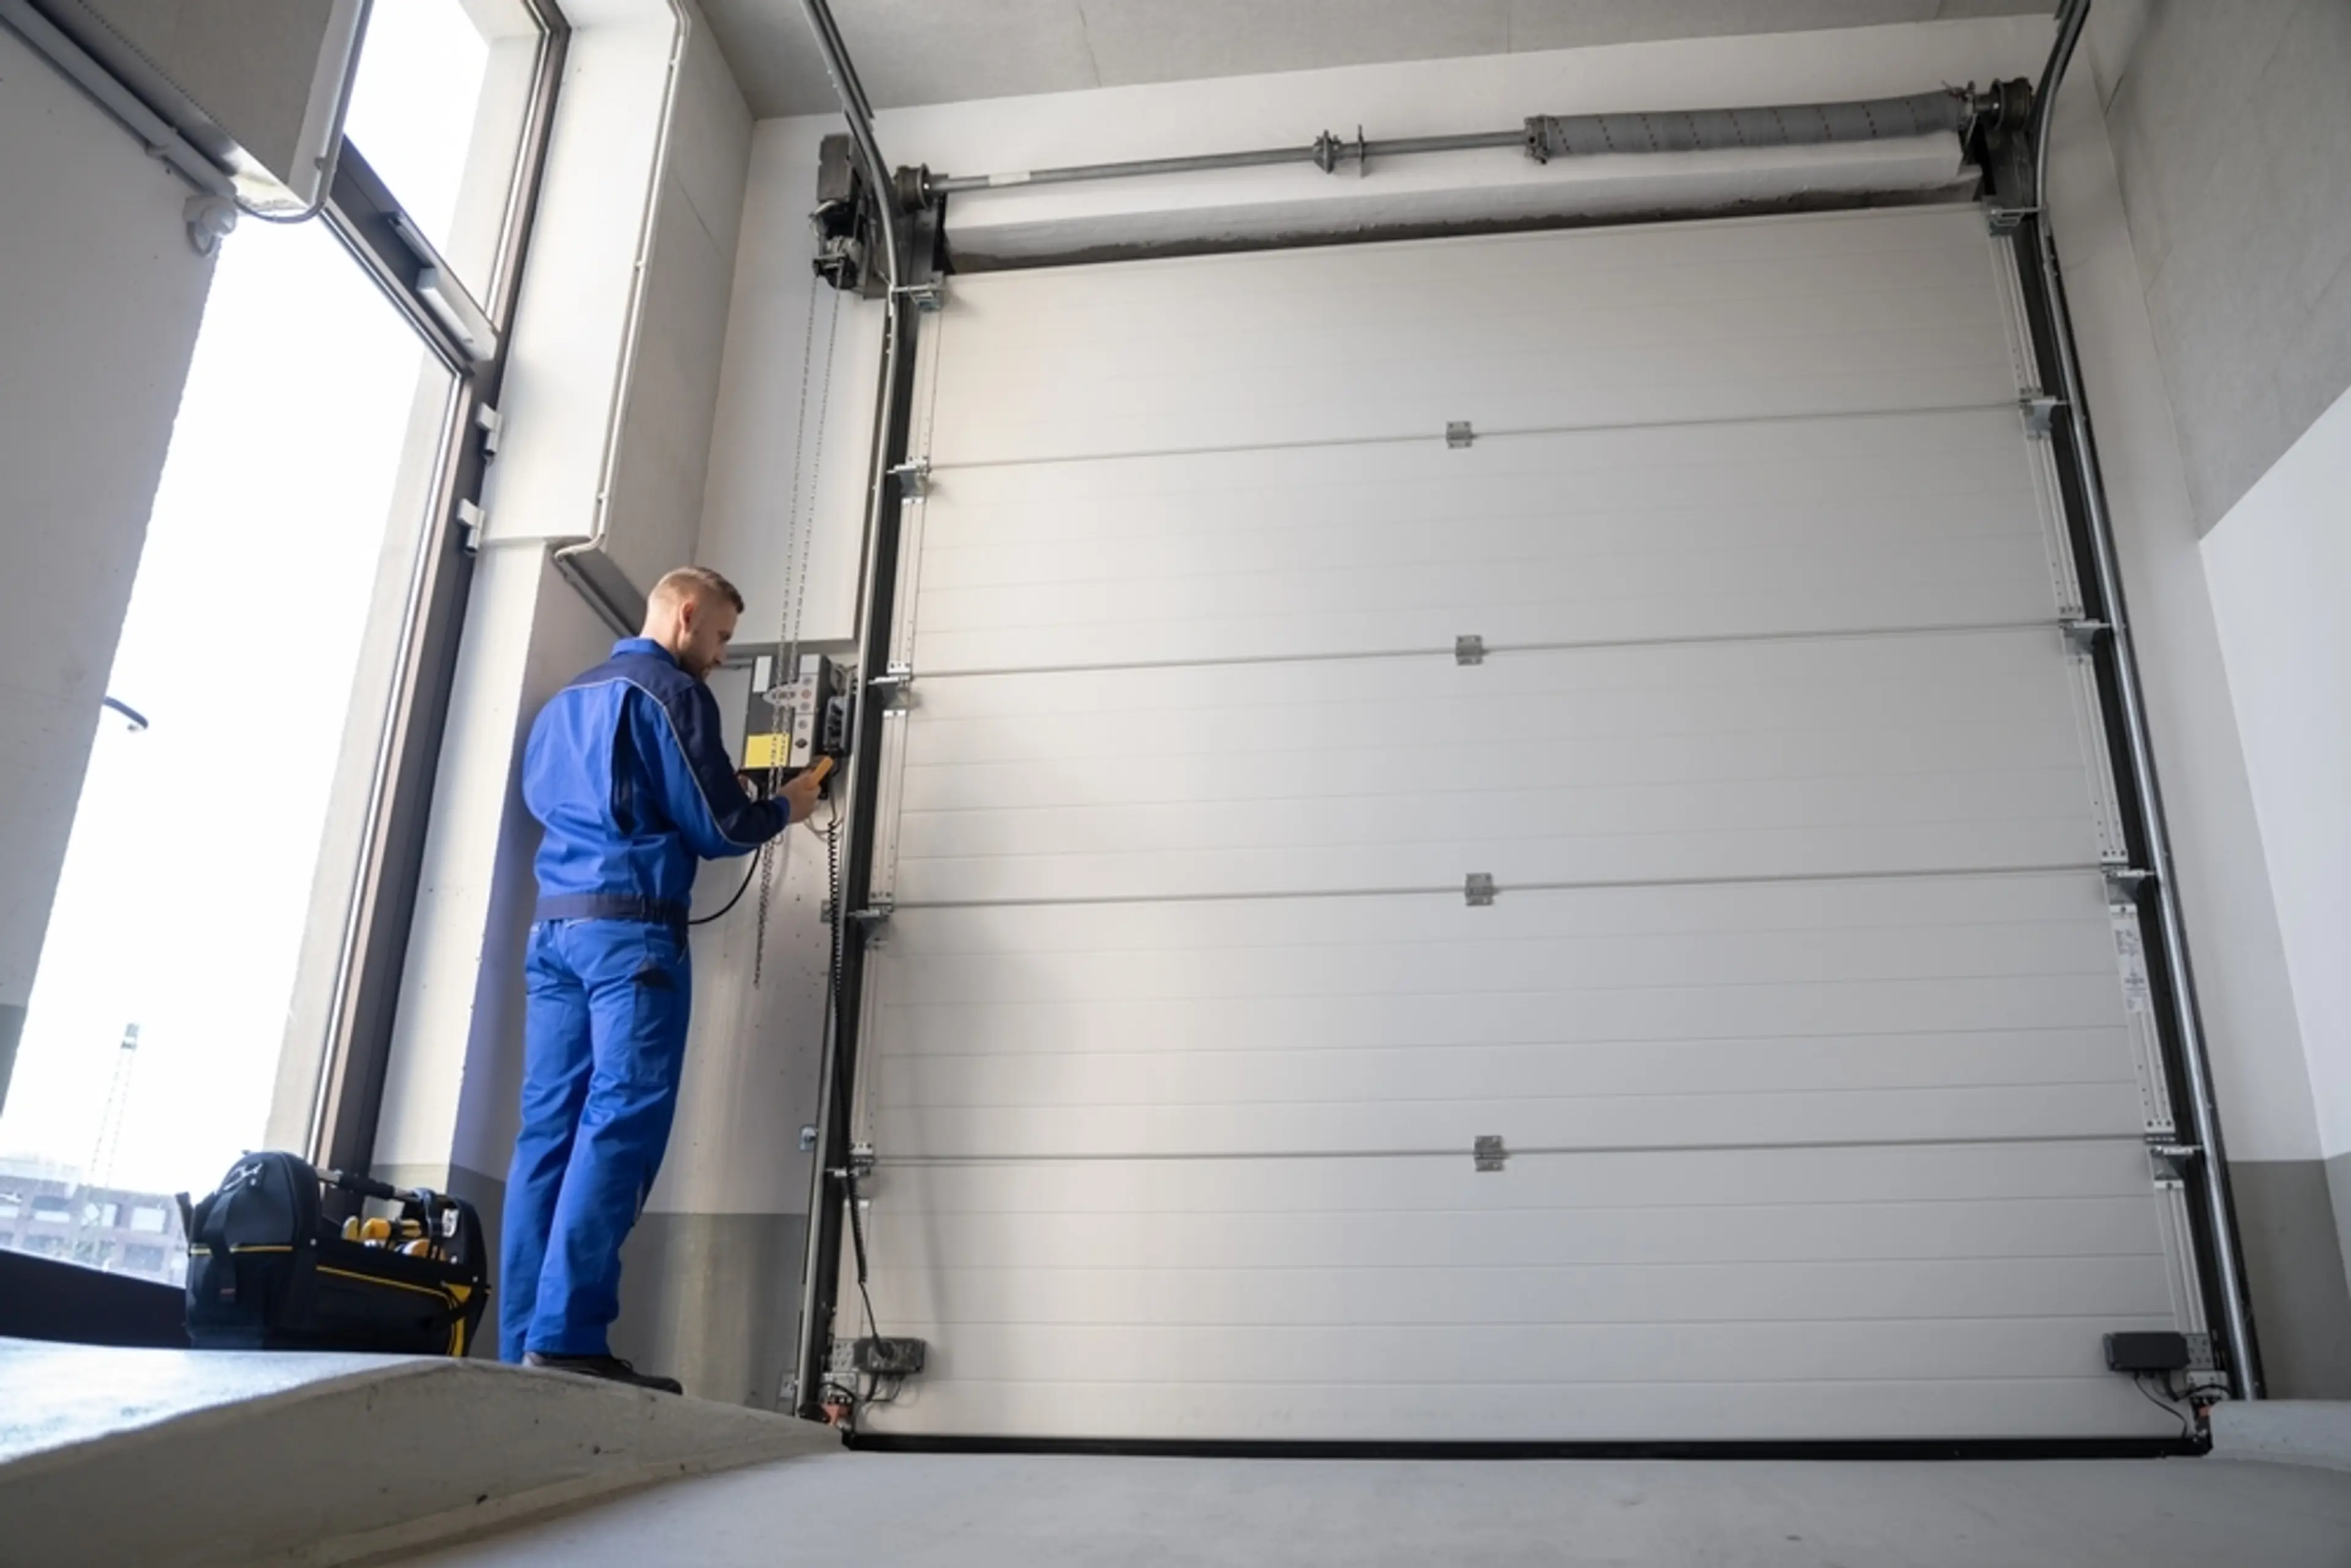 Comment remplacer une porte de garage basculante par une porte sectionnelle ?